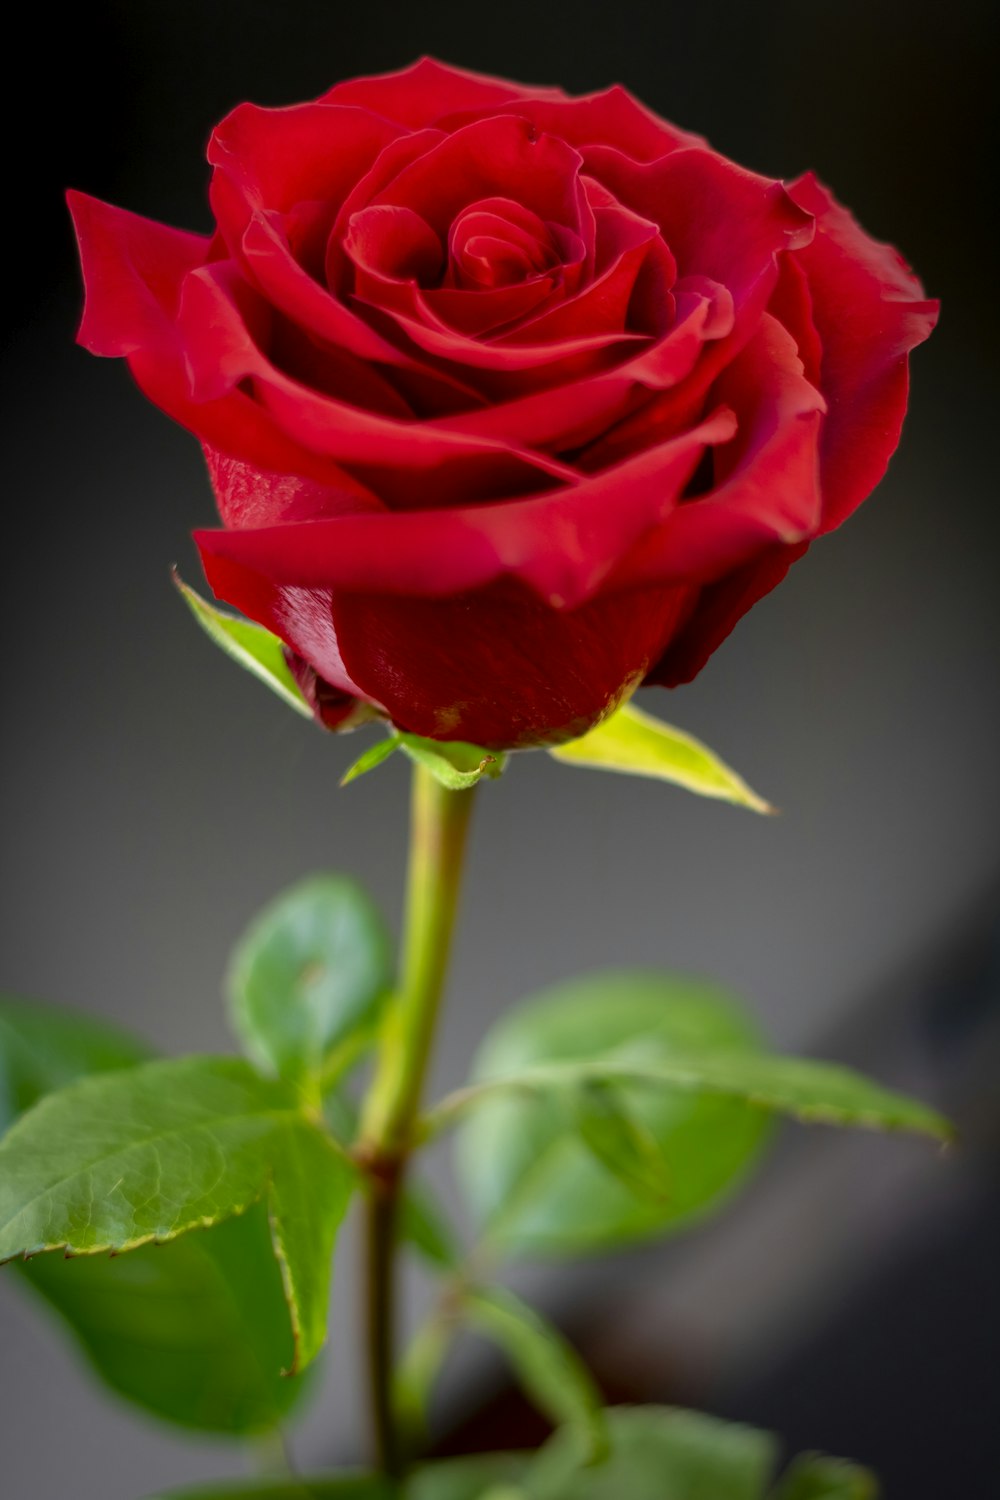 Más de 350 imágenes de rosas rojas [HQ] | Descargar imágenes gratis en  Unsplash